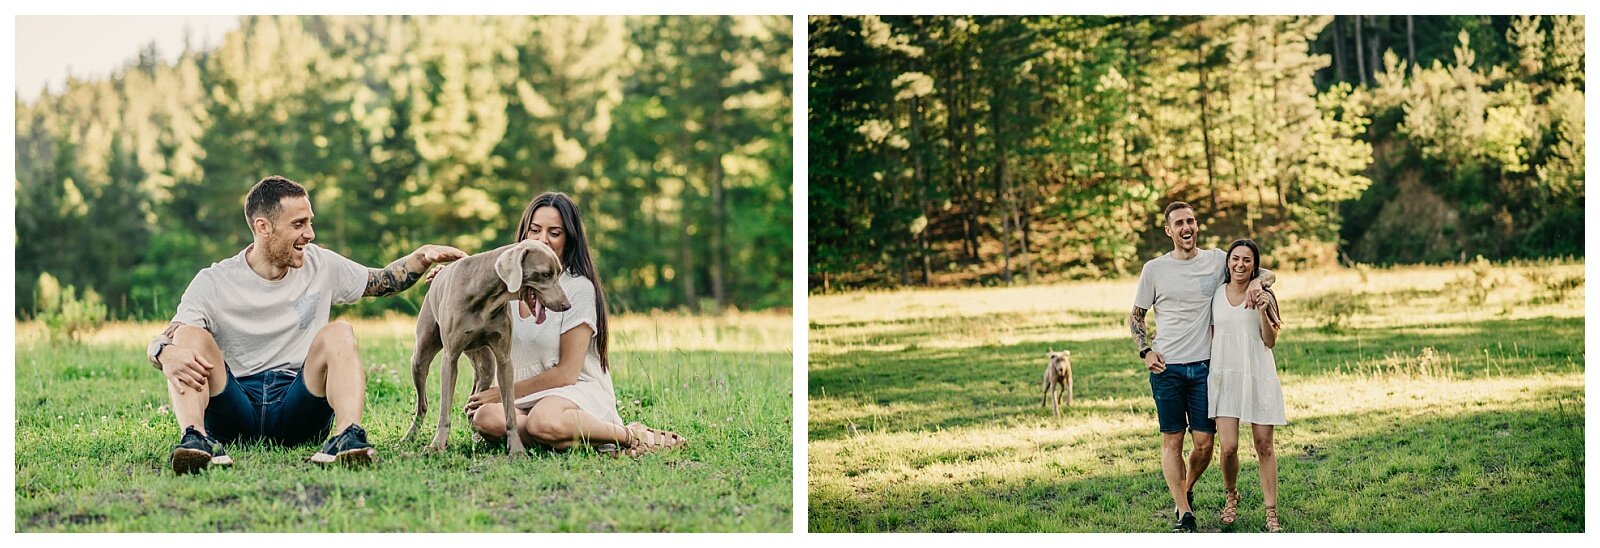 fotografo de bodas mondragon gipuzkoa fotos de pareja con perro (3).jpg